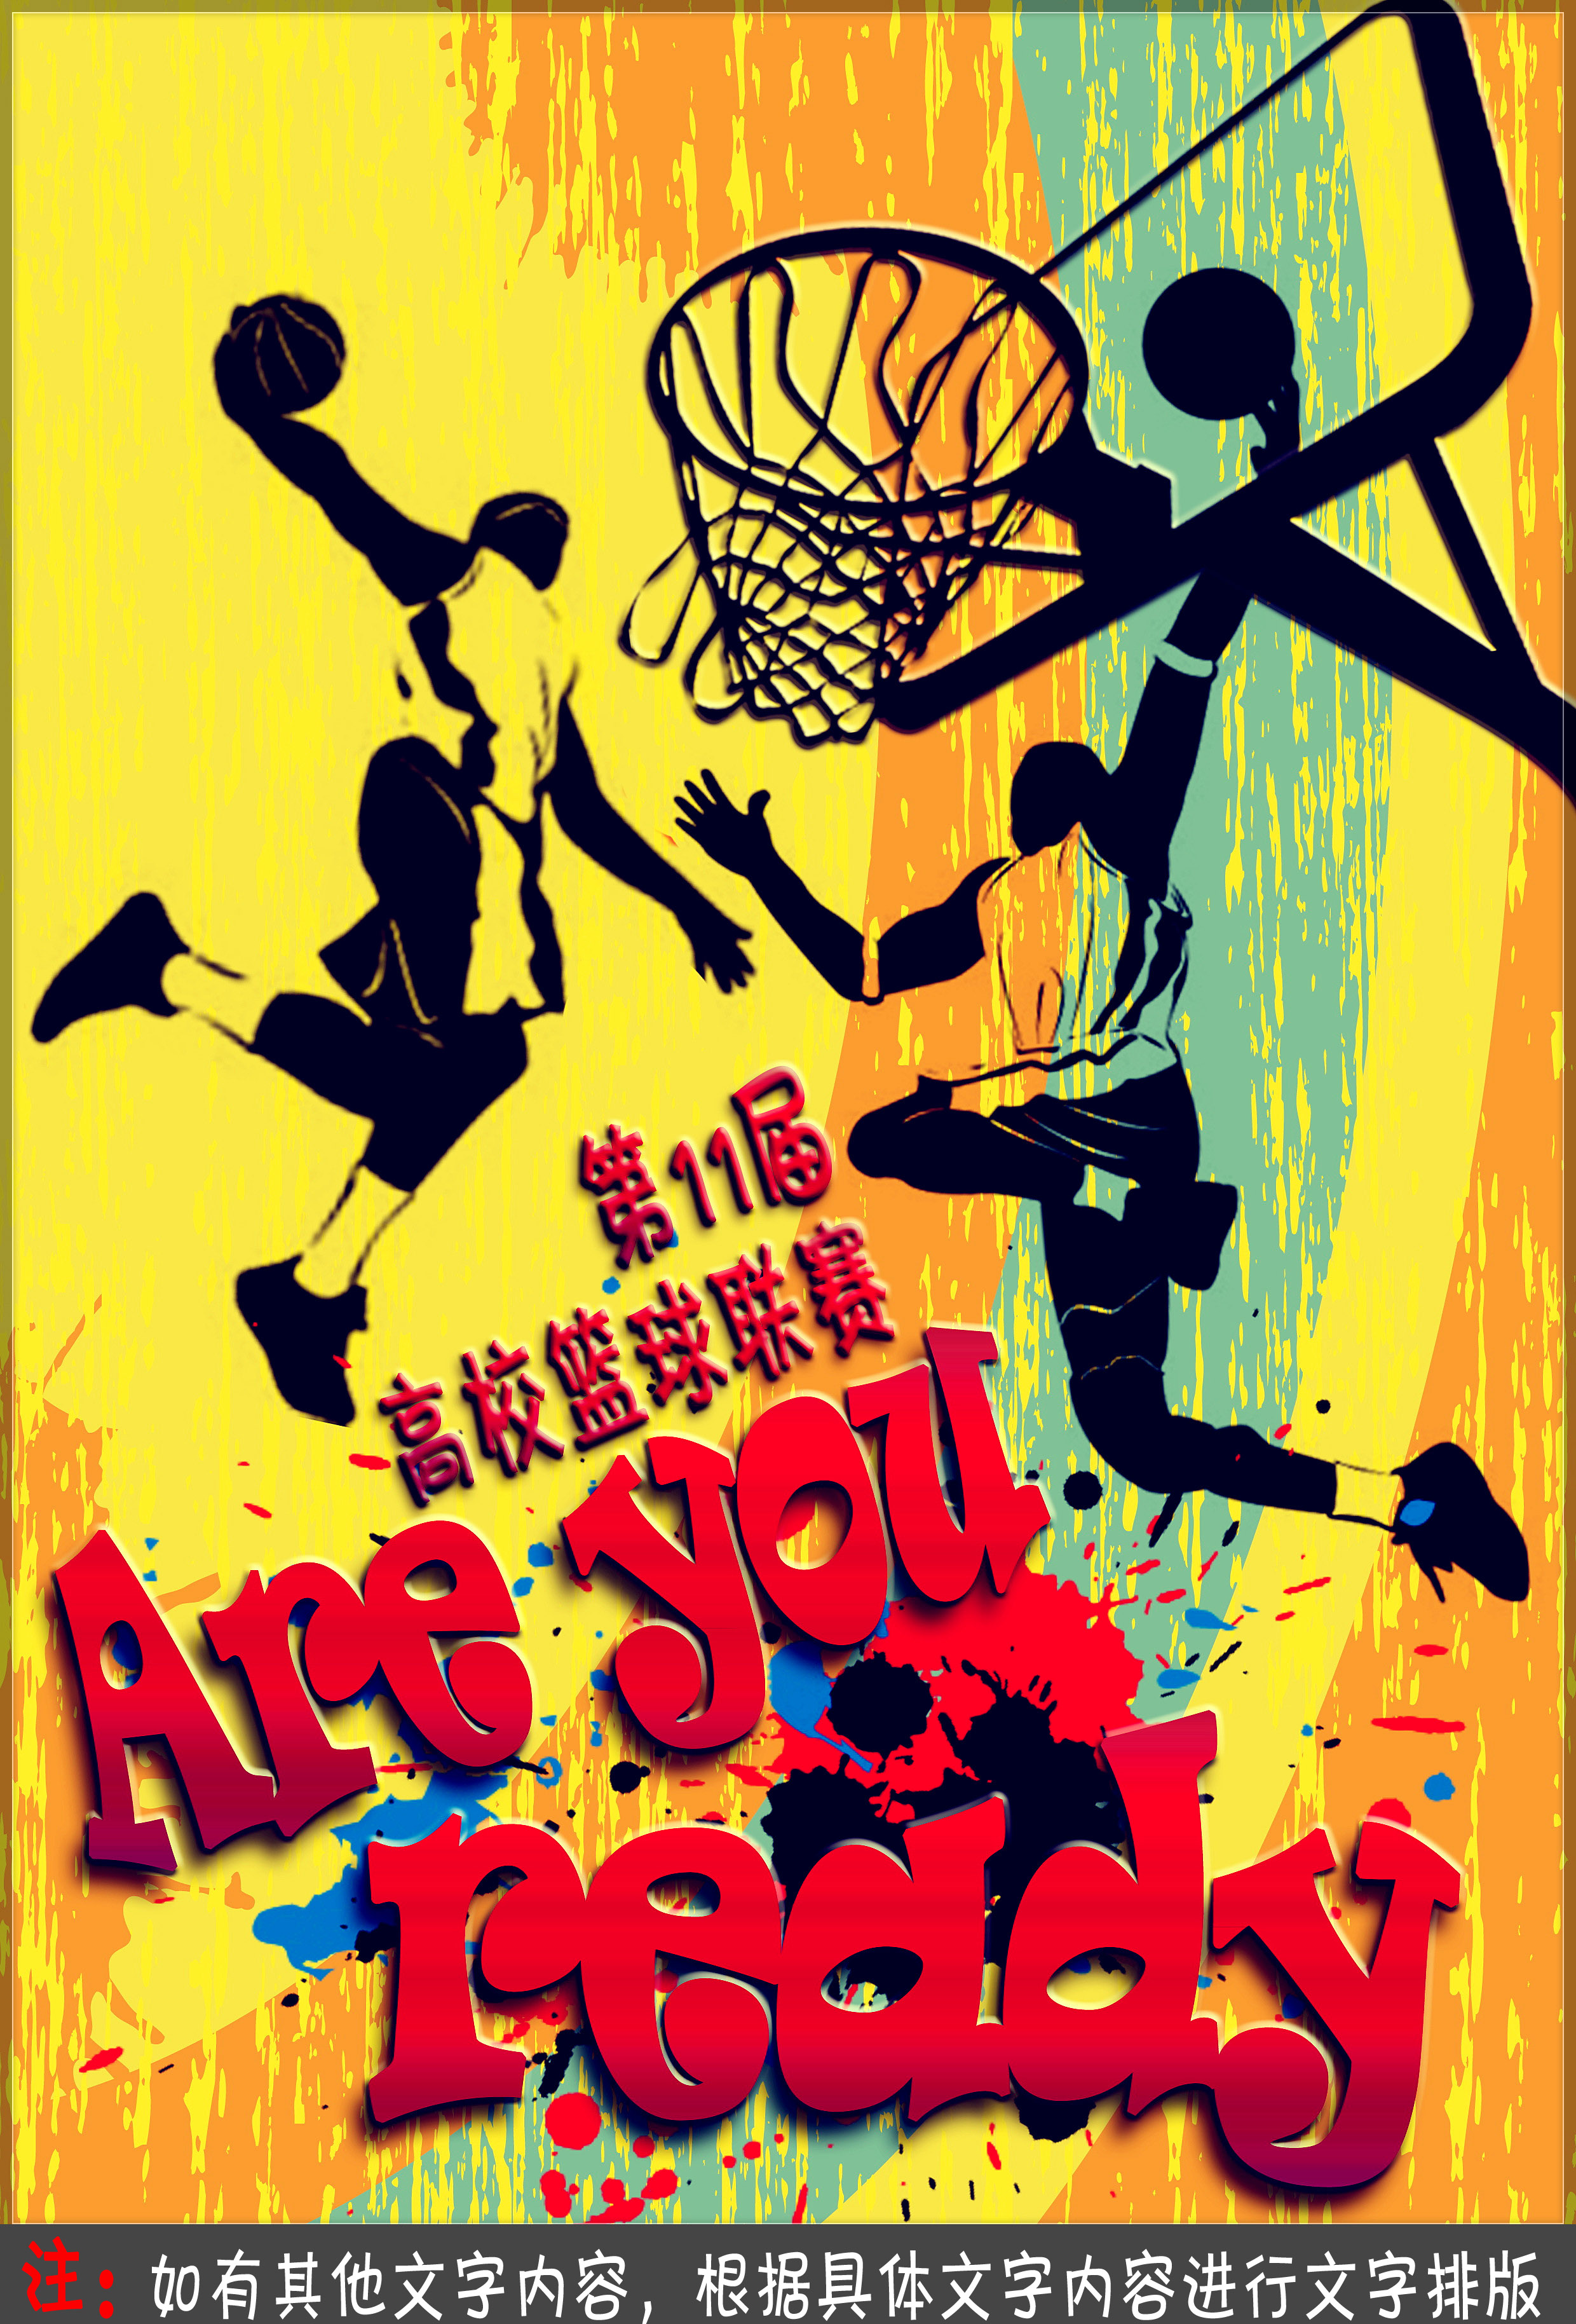 特急!高校篮球比赛海报设计第21114306号稿件